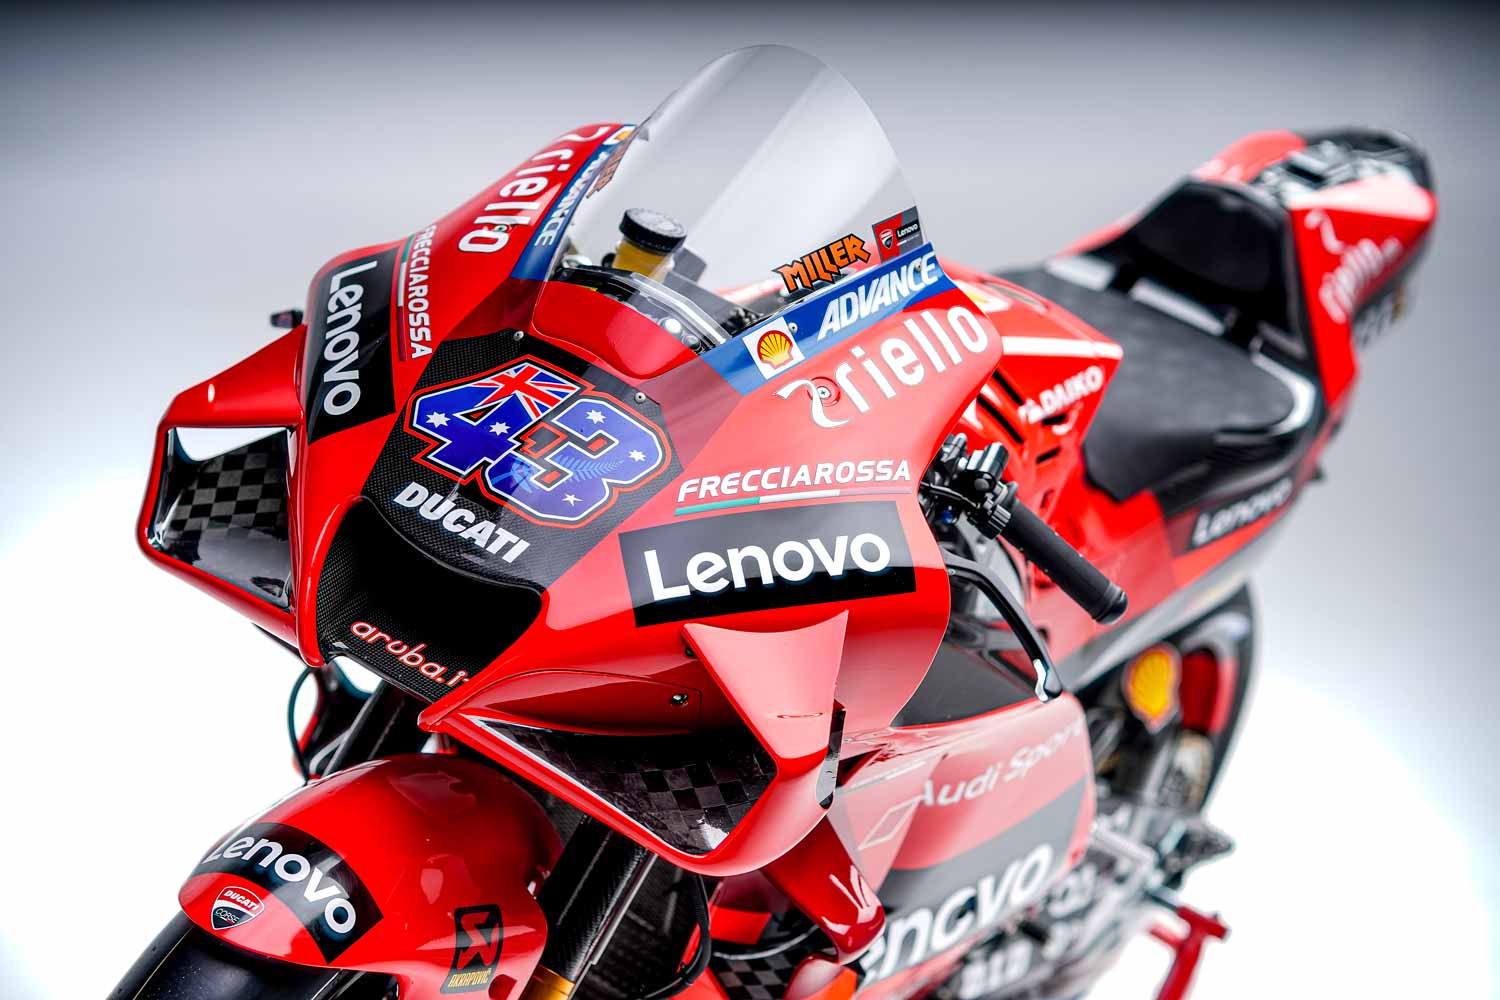 La Desmosedici GP della Ducati Corse con il logo Frecciarossa